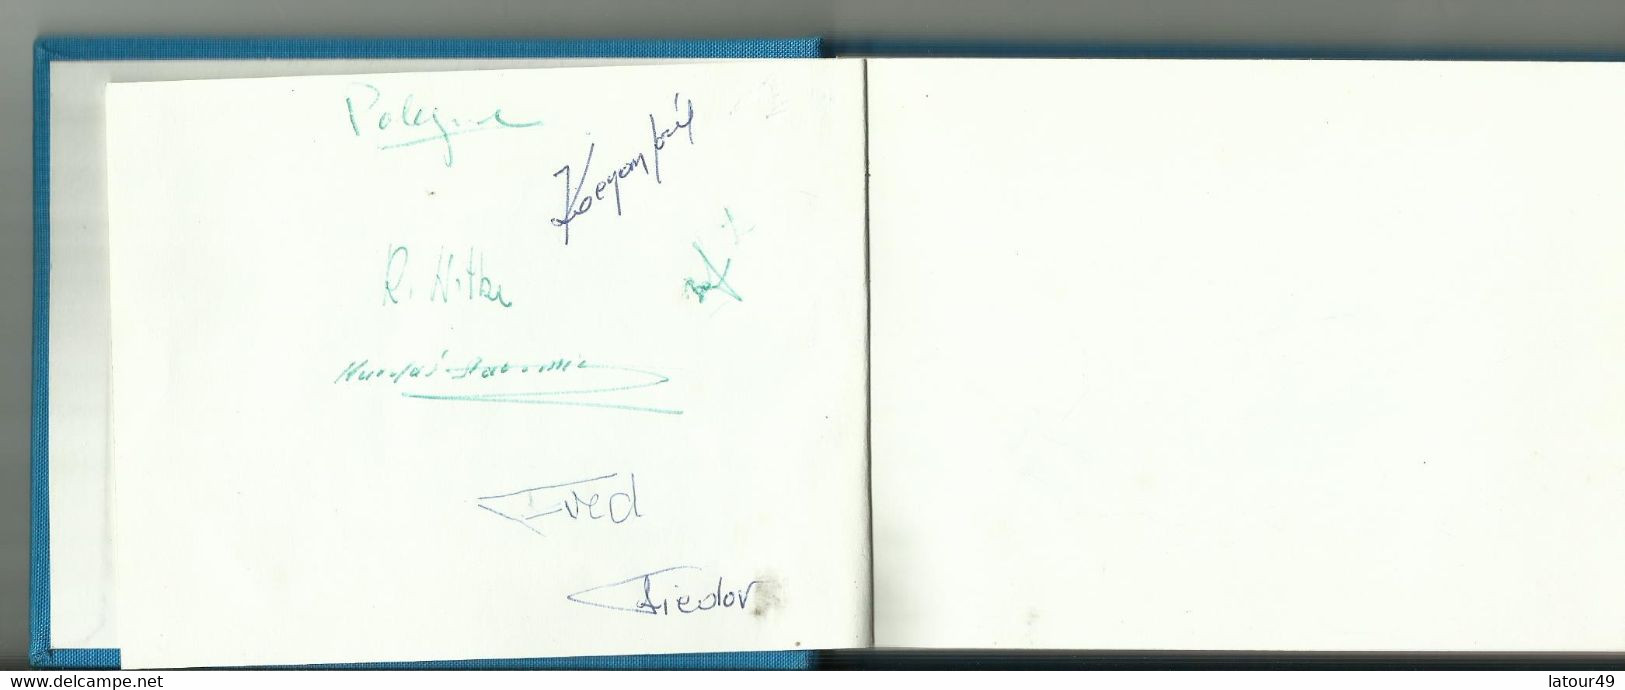 Jeux Olympique Grenoble1968  Autographes Pologne.jozet Kocjan Crwin Fredor Etc. Norvege Bjorn Wirkola Porte Drapeau Etc - Autogramme